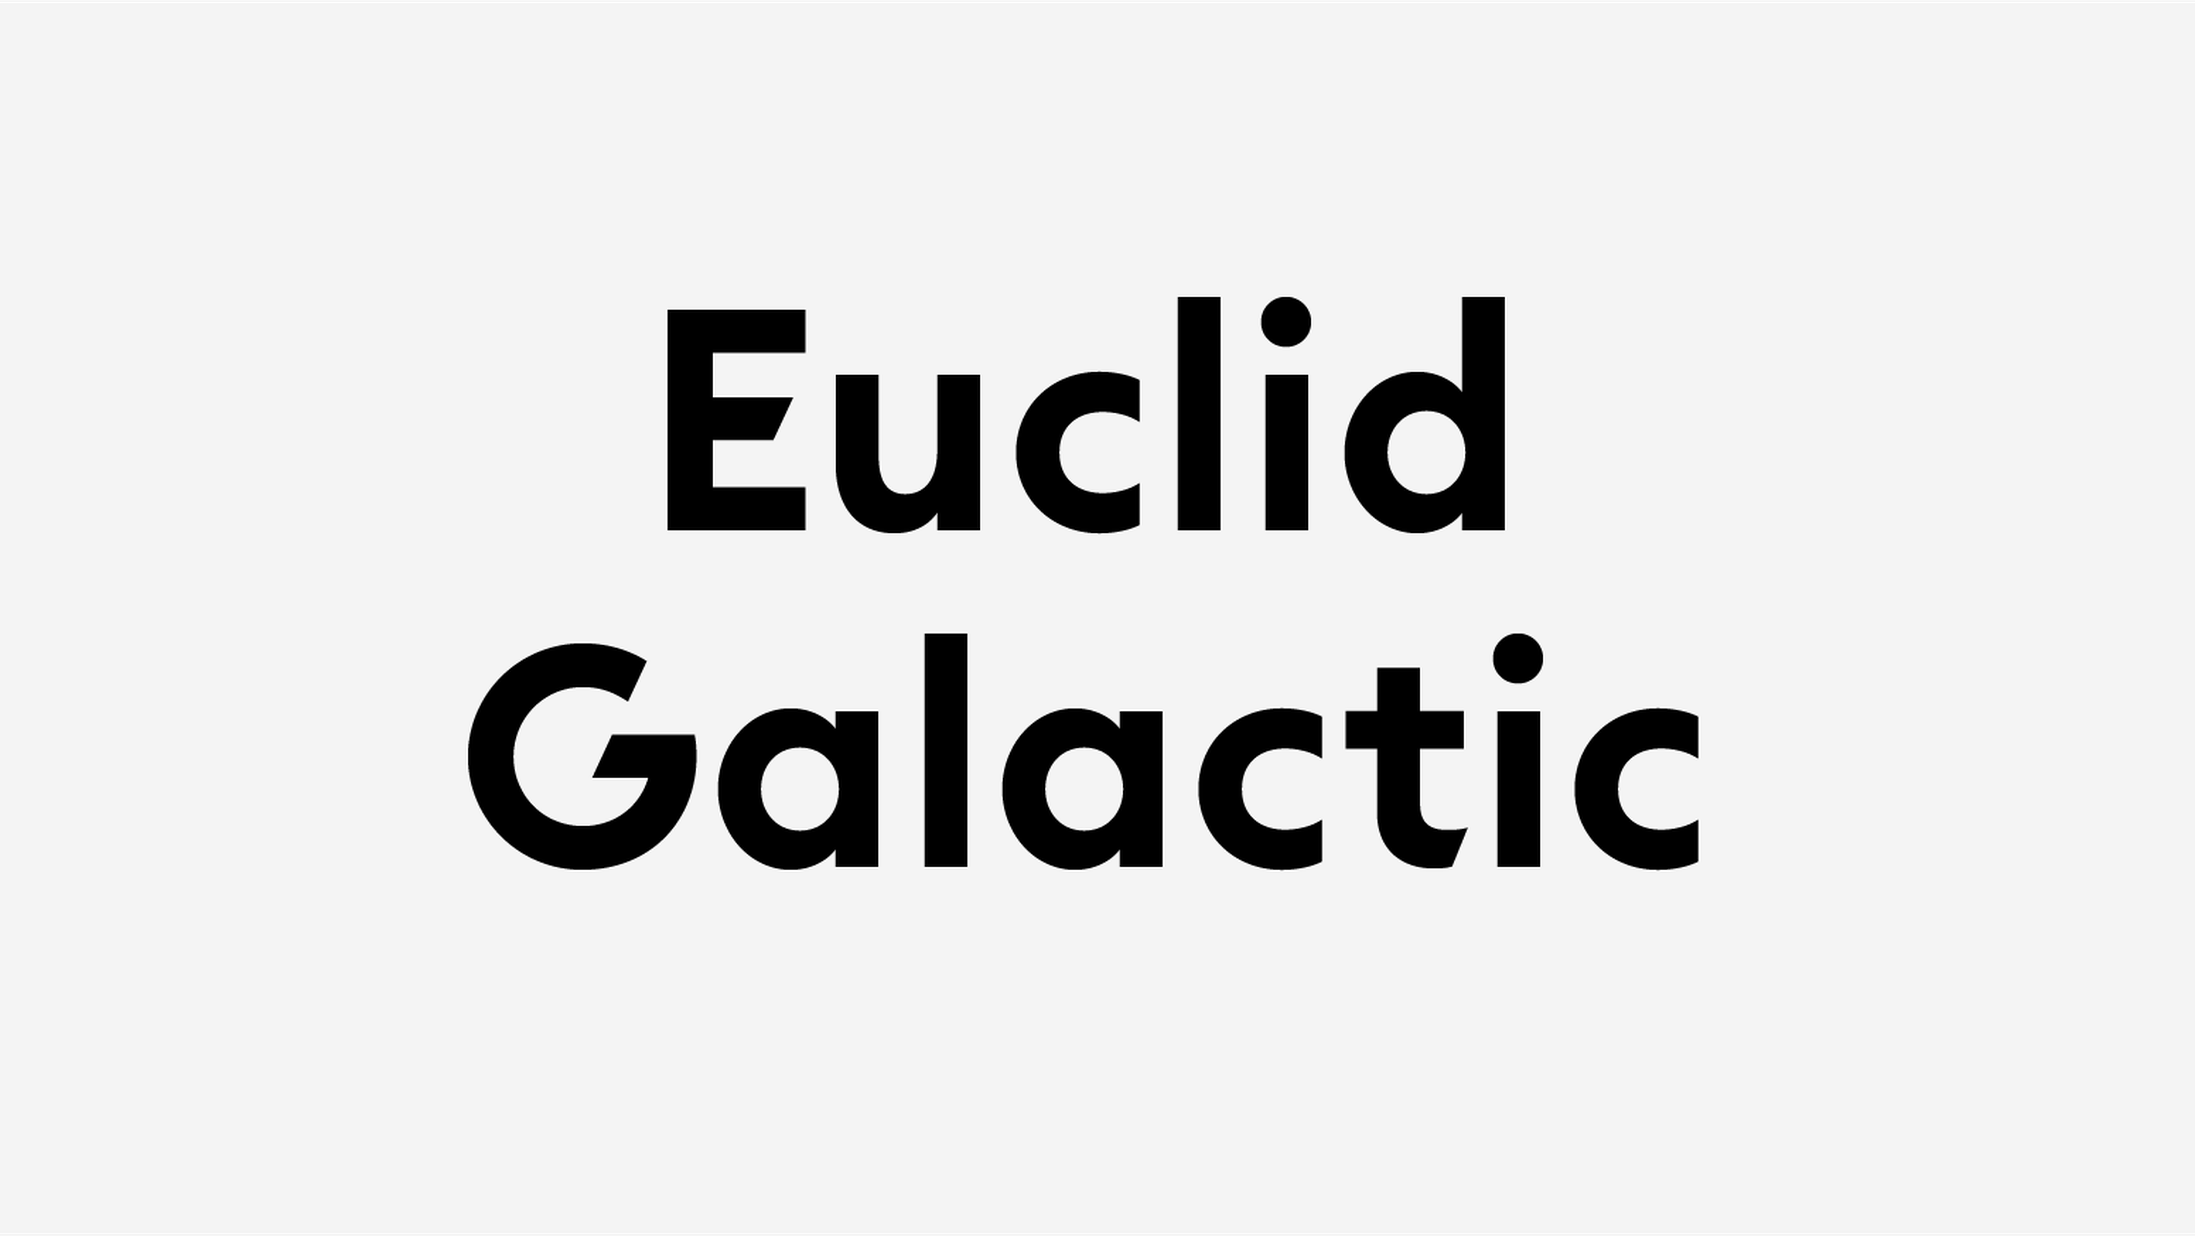 Пример шрифта Euclid Galactic